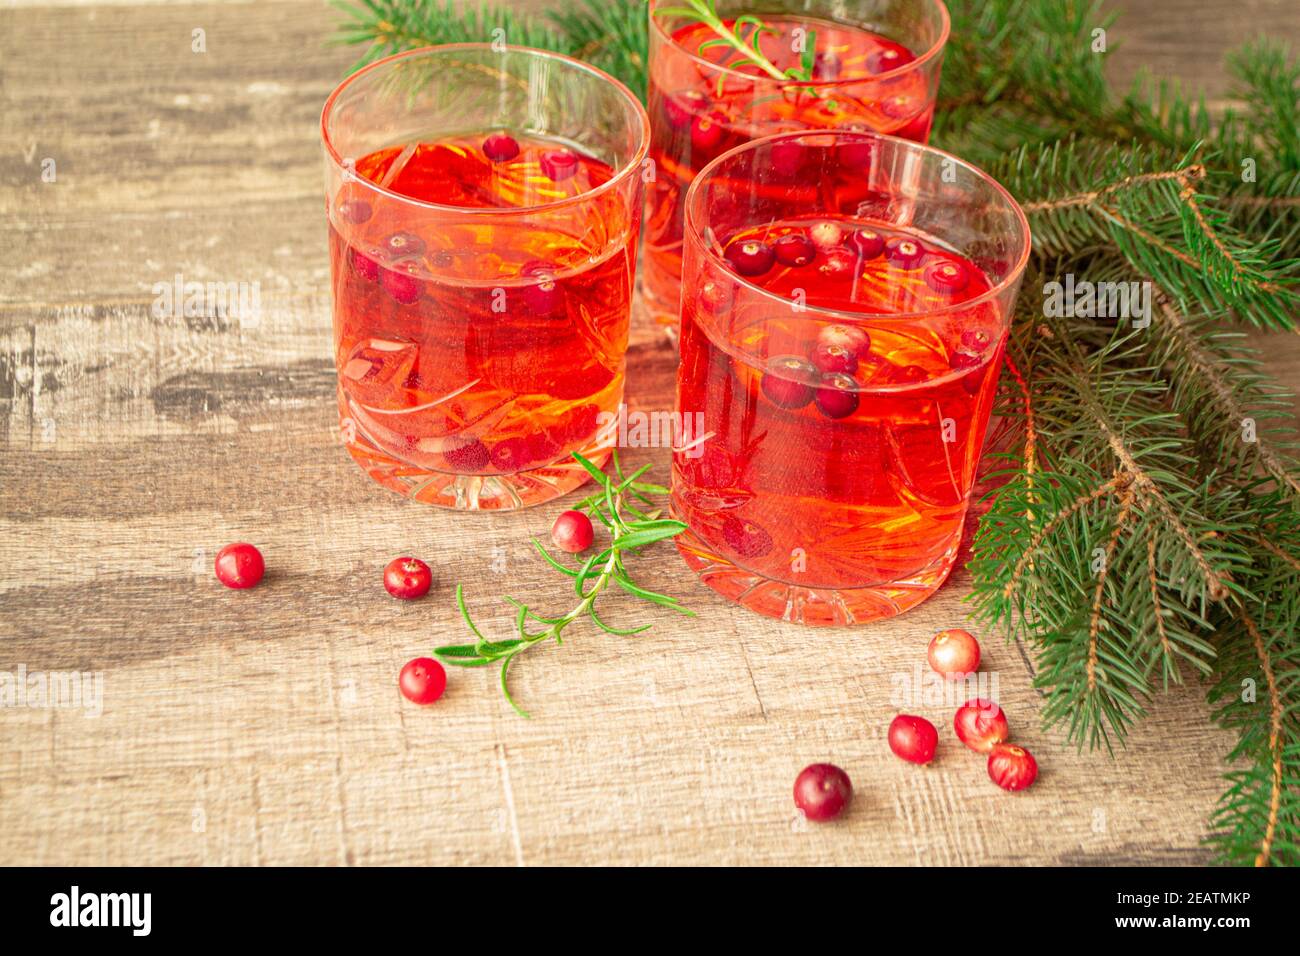 Des verres de Noël de vin chaud rouge et chaud, compote de minerai baies de cowers aux épices et baies de cowers entourées de branches de sapin Banque D'Images